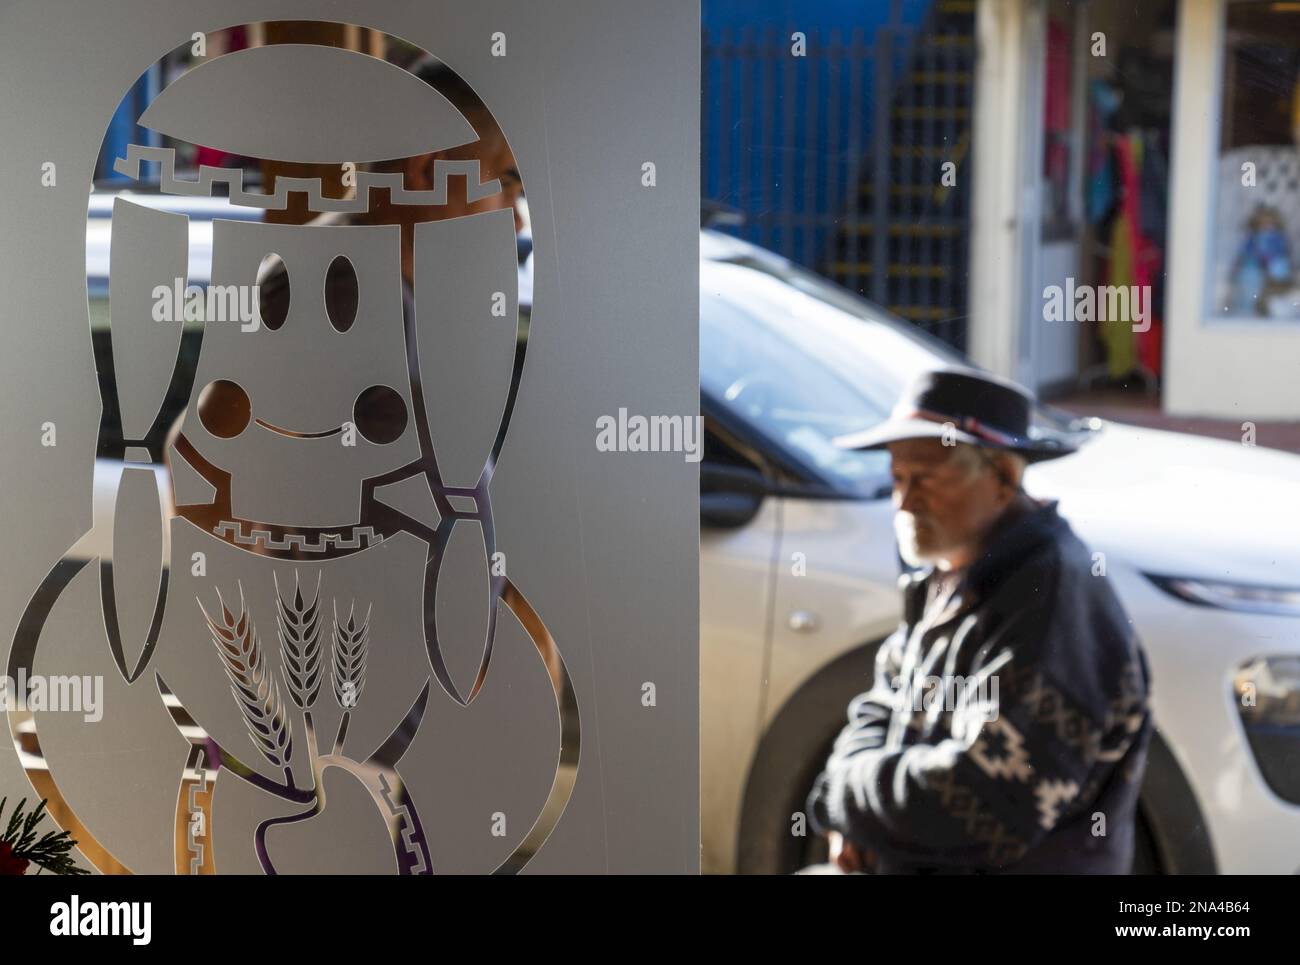 Lateinamerikanische Kunst in Glas geätzt, während ein älterer Mann vorbeigeht; Lota, Biobio, Chile Stockfoto